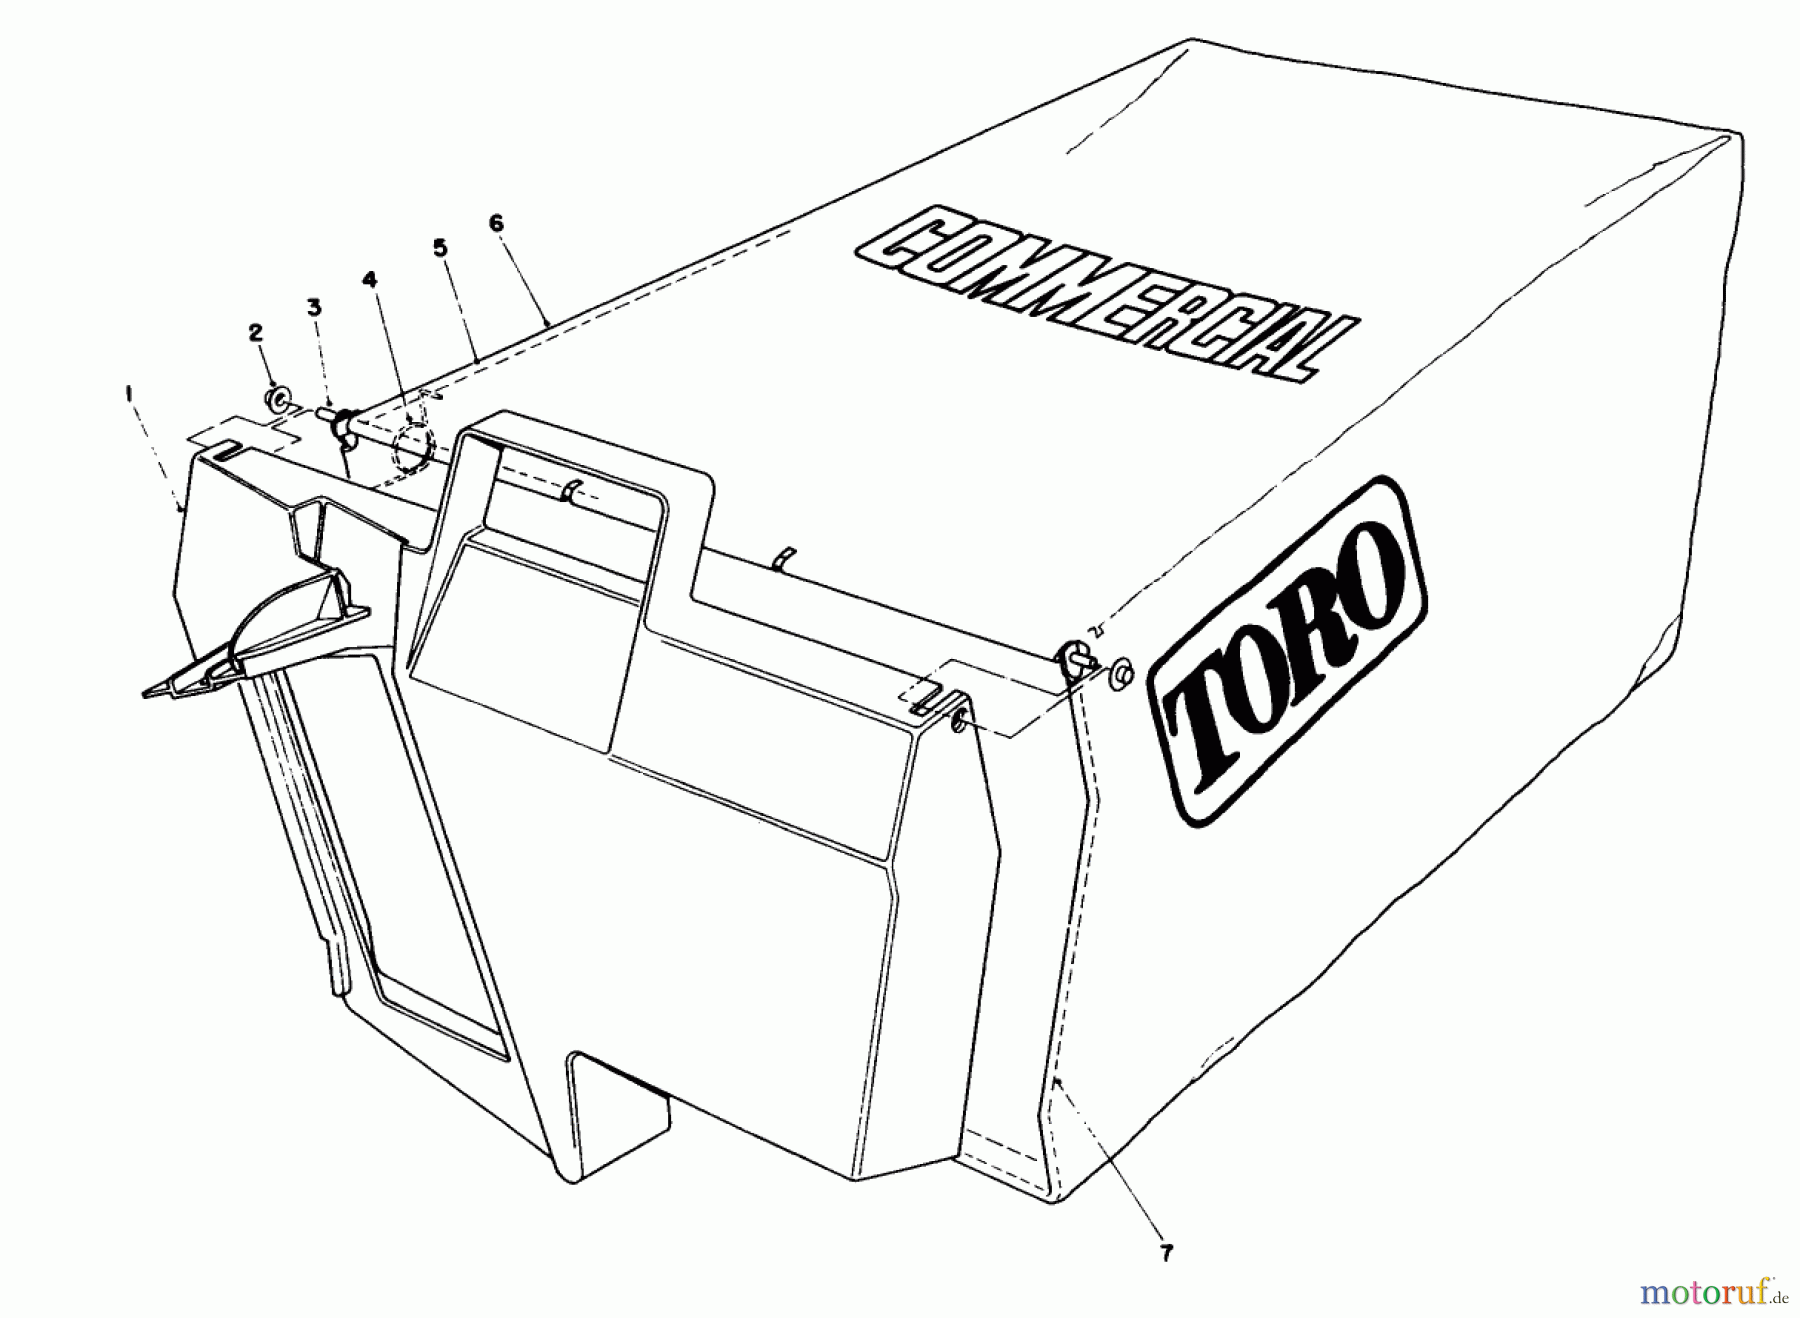  Toro Neu Mowers, Walk-Behind Seite 2 22043 - Toro Lawnmower, 1993 (3900965-3999999) GRASS BAG ASSEMBLY NO. 11-5609